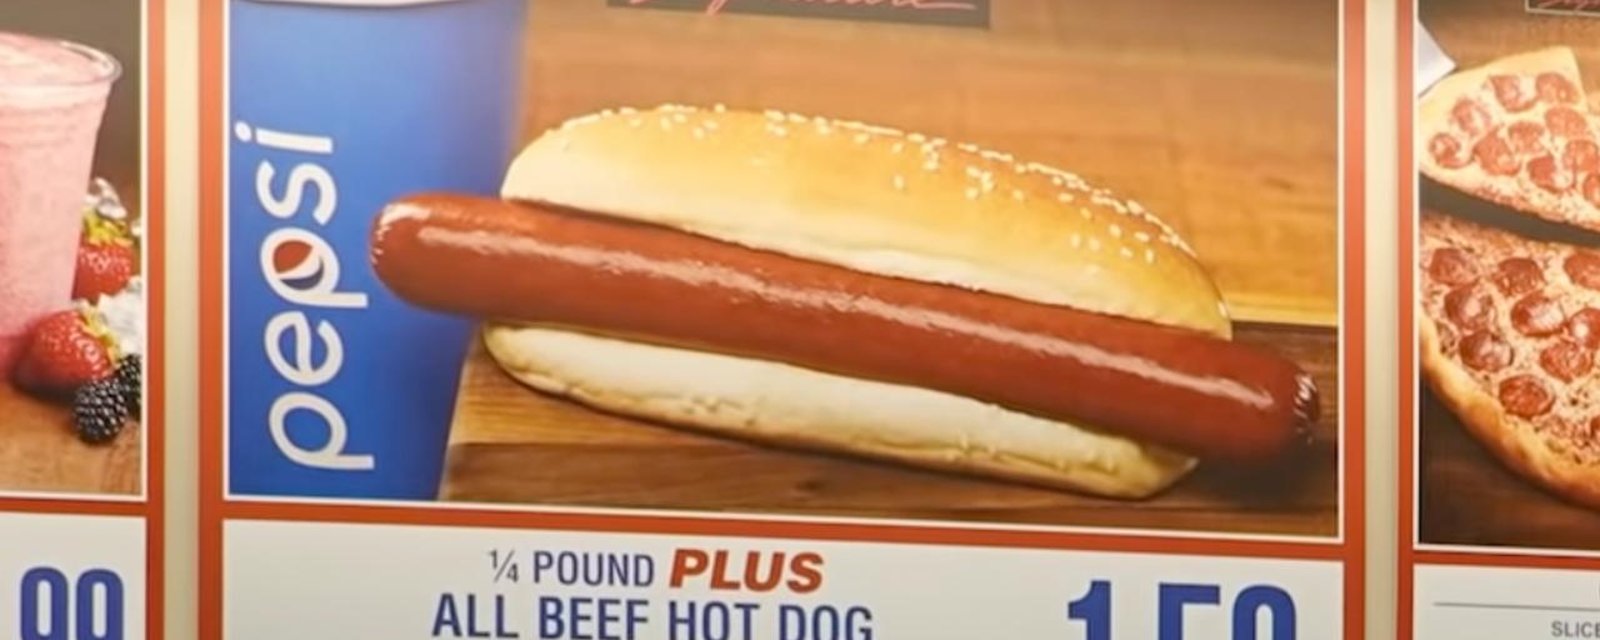 Le prix du hot-dog chez Costco résiste toujours à l'inflation